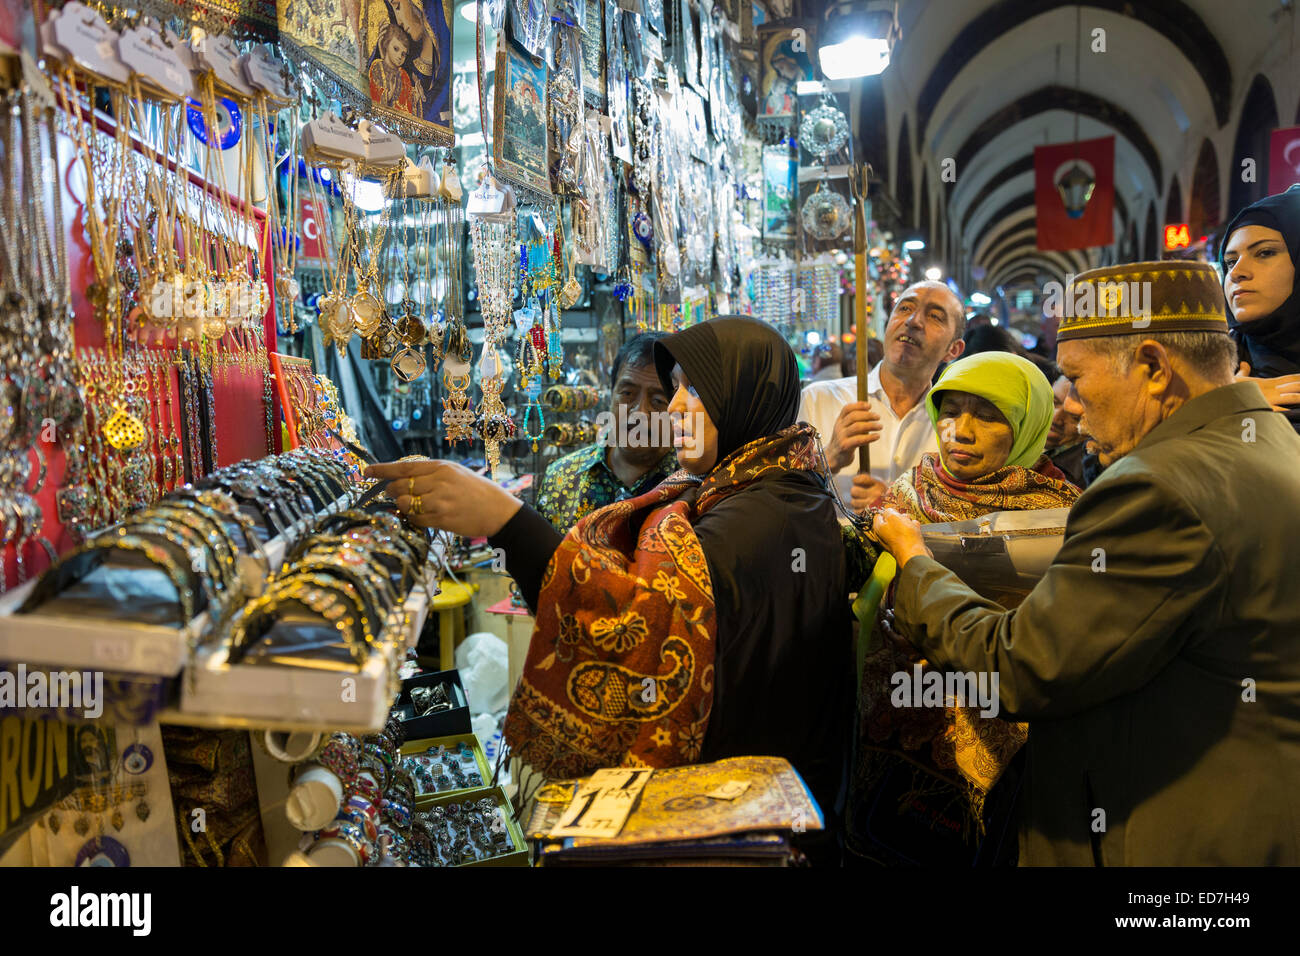 Shopper Ansichten Schmuck auf dem Display für Verkauf in den Misir Carsisi ägyptischen Basar Lebensmittel und Gewürz-Markt in Istanbul, Türkei Stockfoto